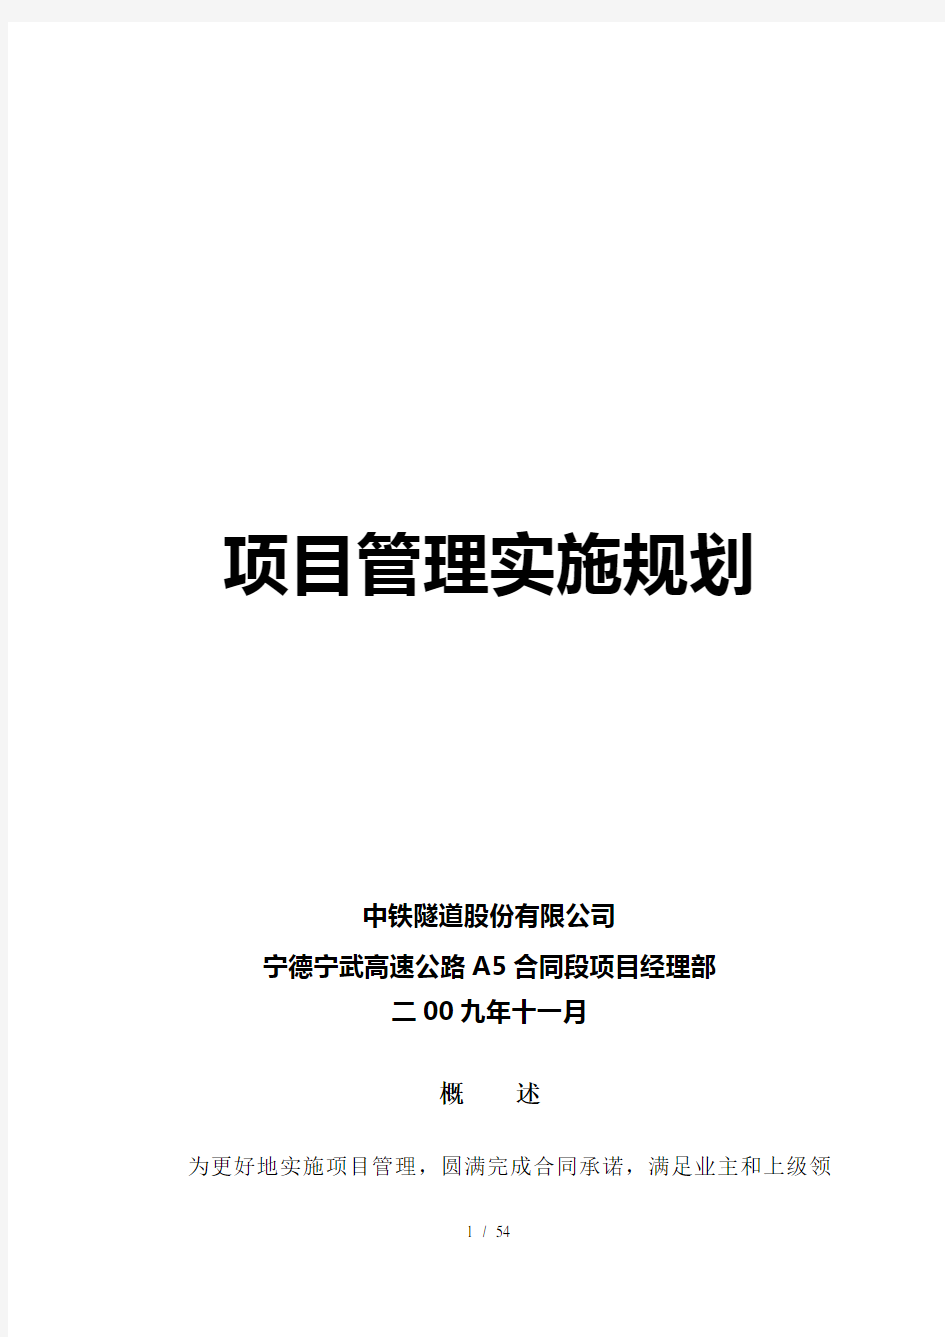 项目管理实施规划(范本)(54页)